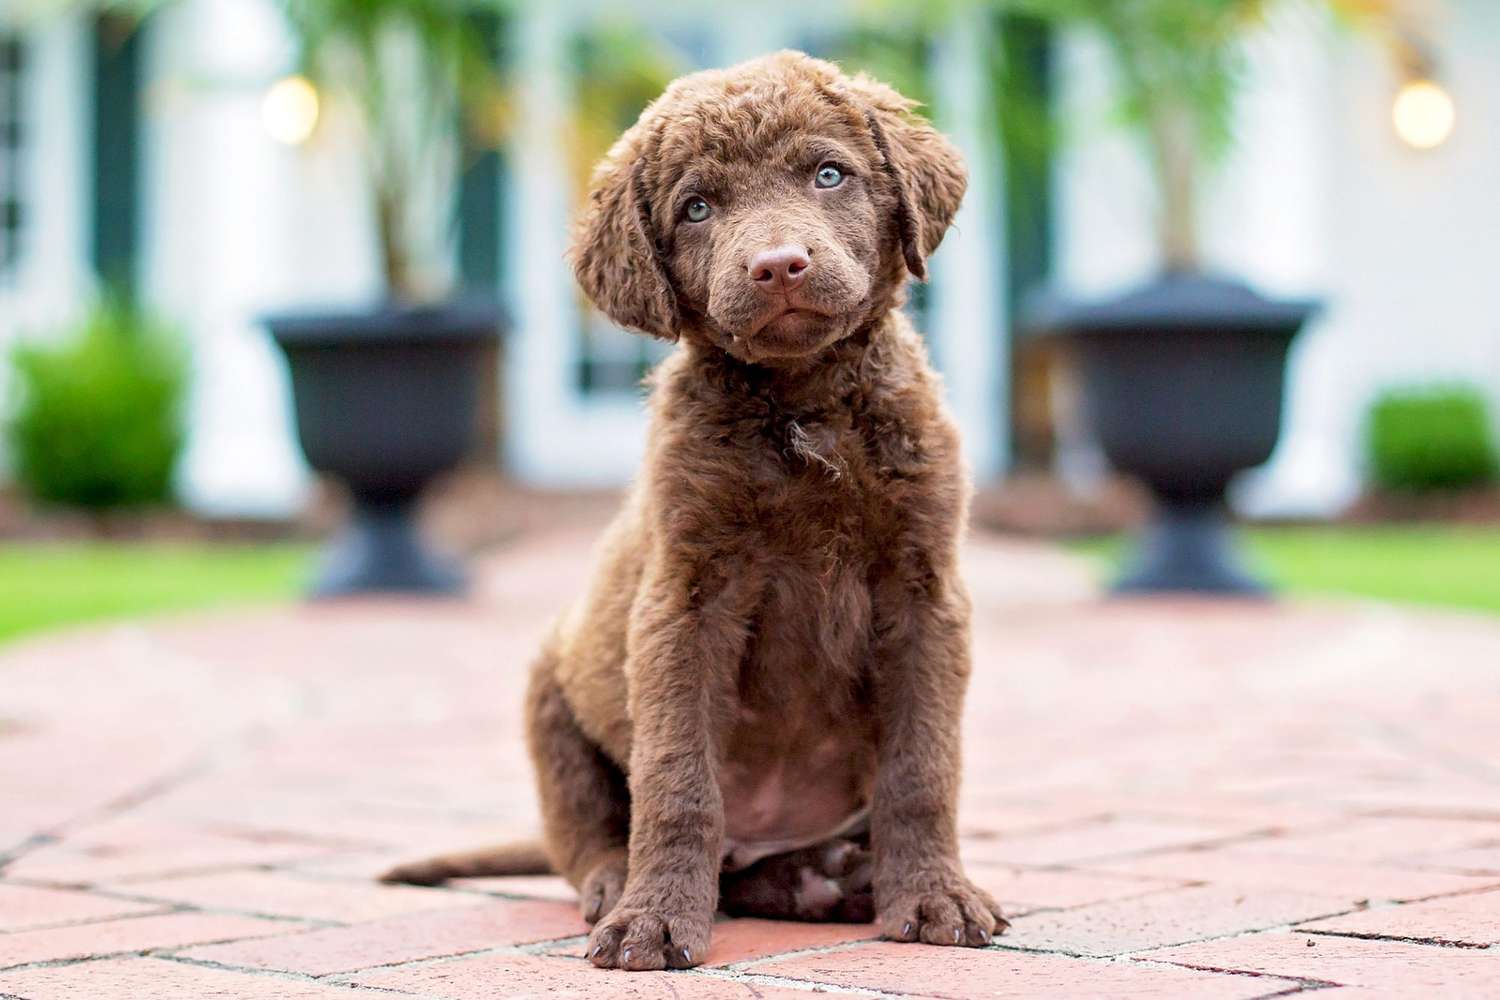 brown chesapeake bay retriever puppy sitting on brick pavement